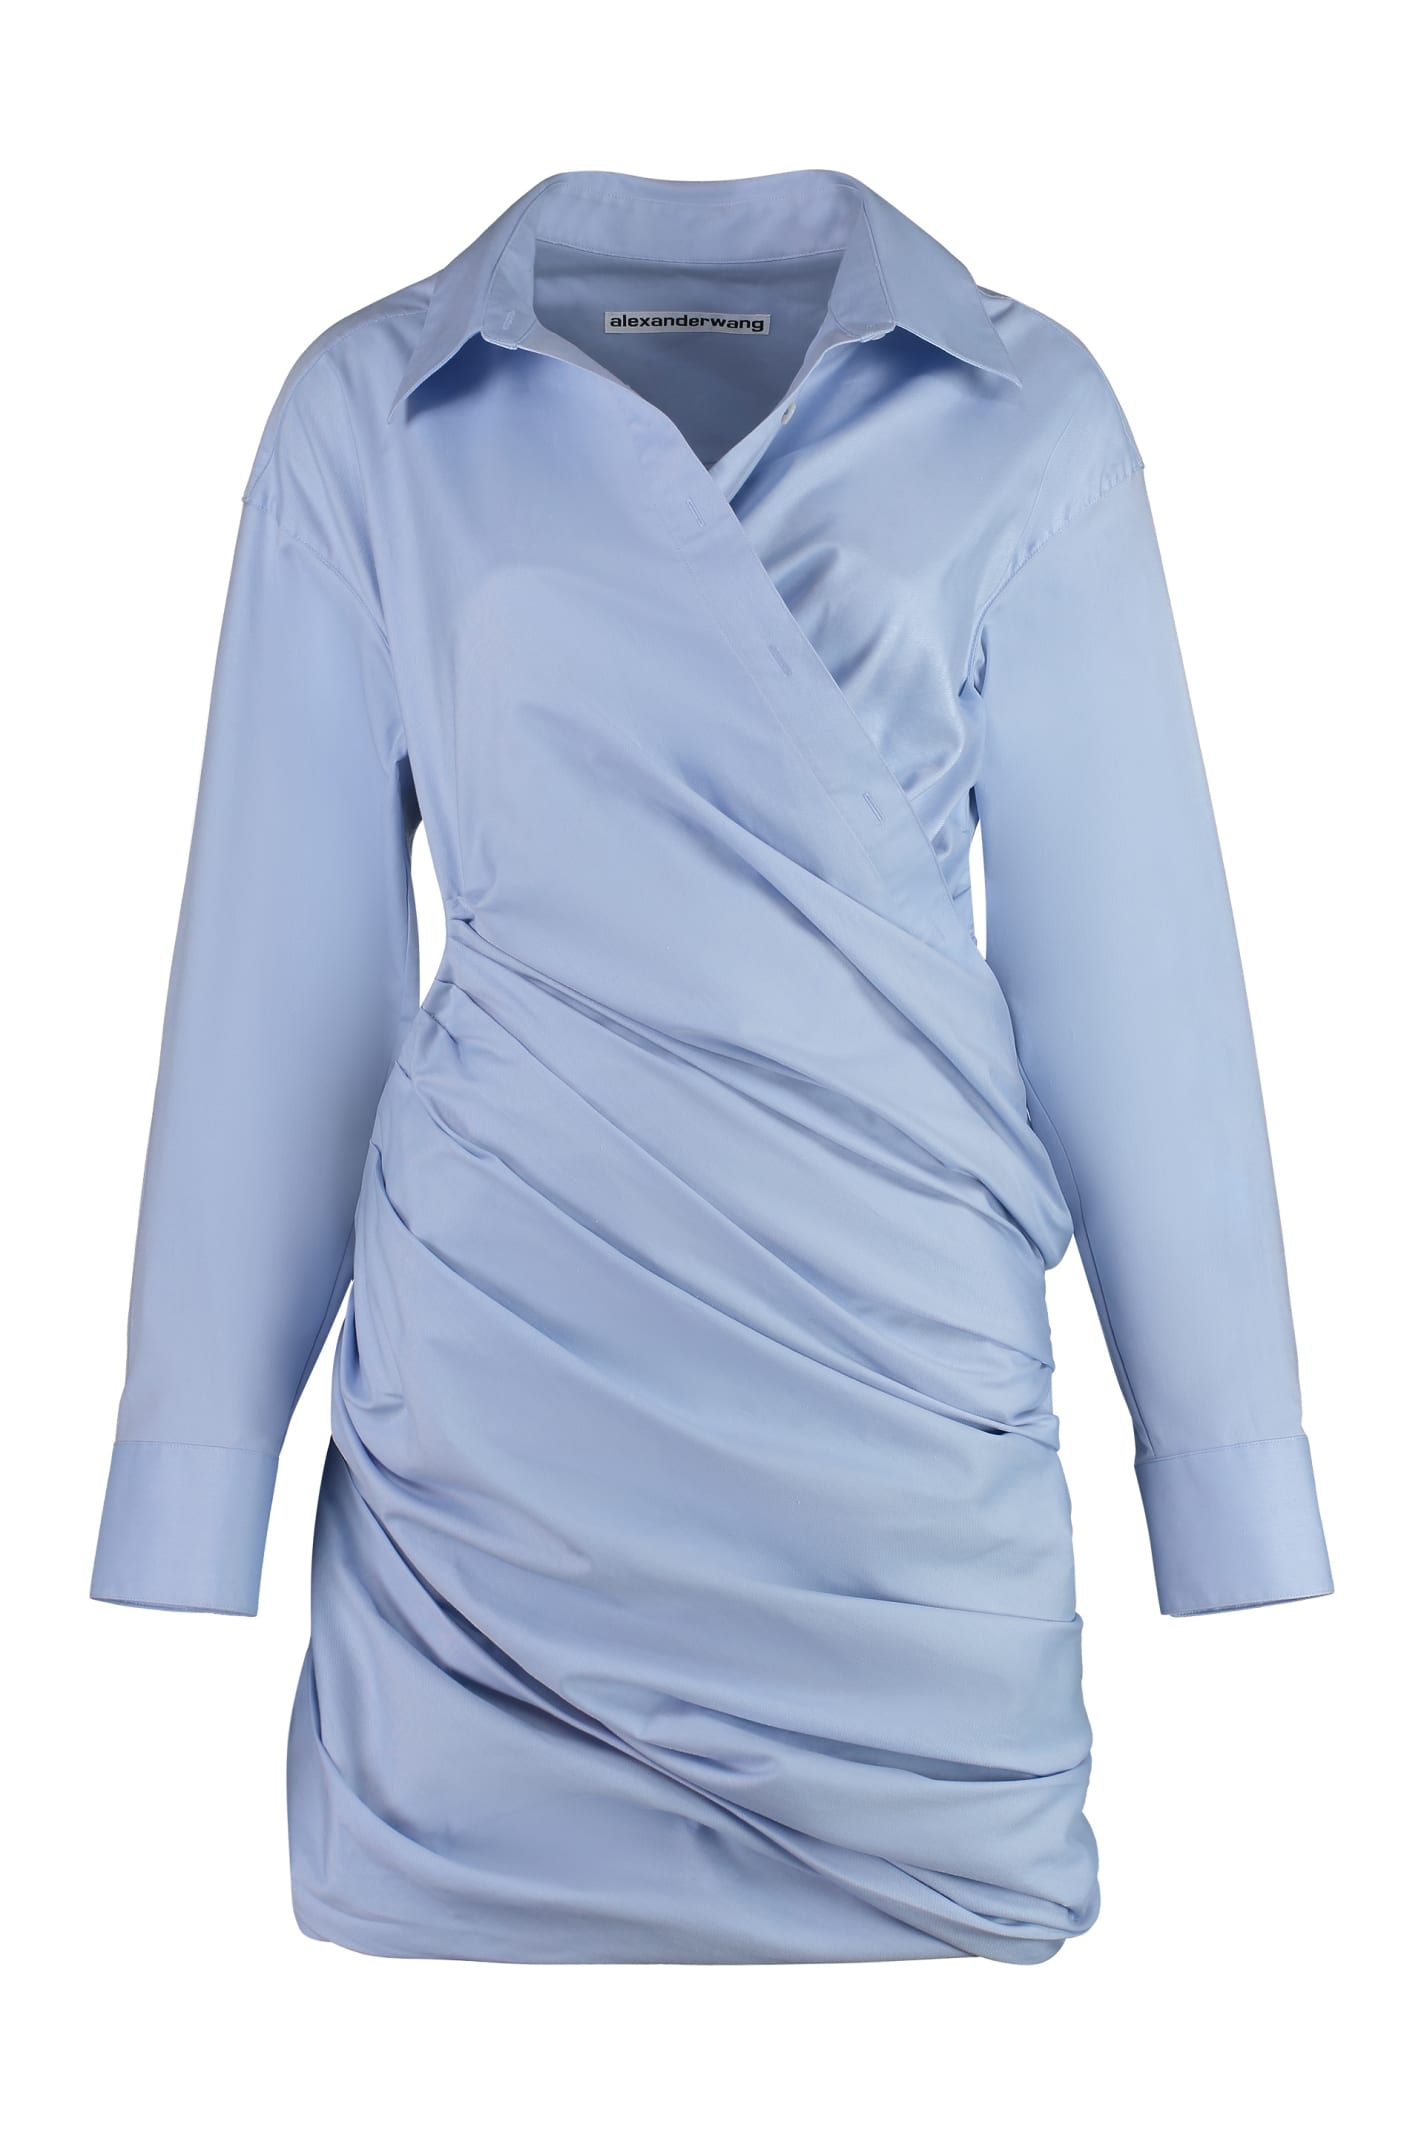 Alexander Wang Cotton Mini-dress In Light Blue